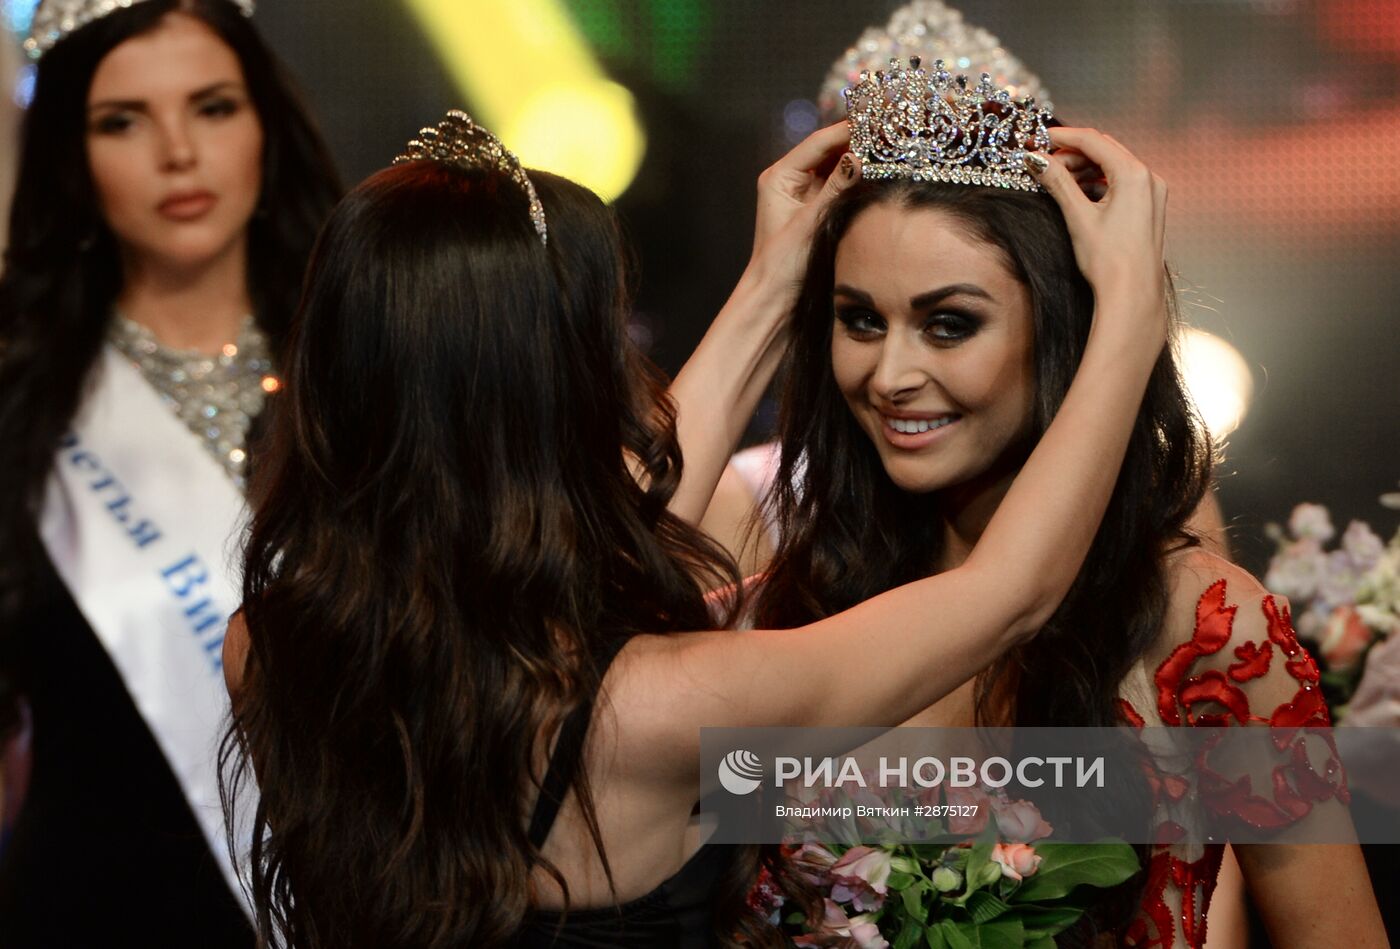 Финал конкурса "Мисс Москва 2016"